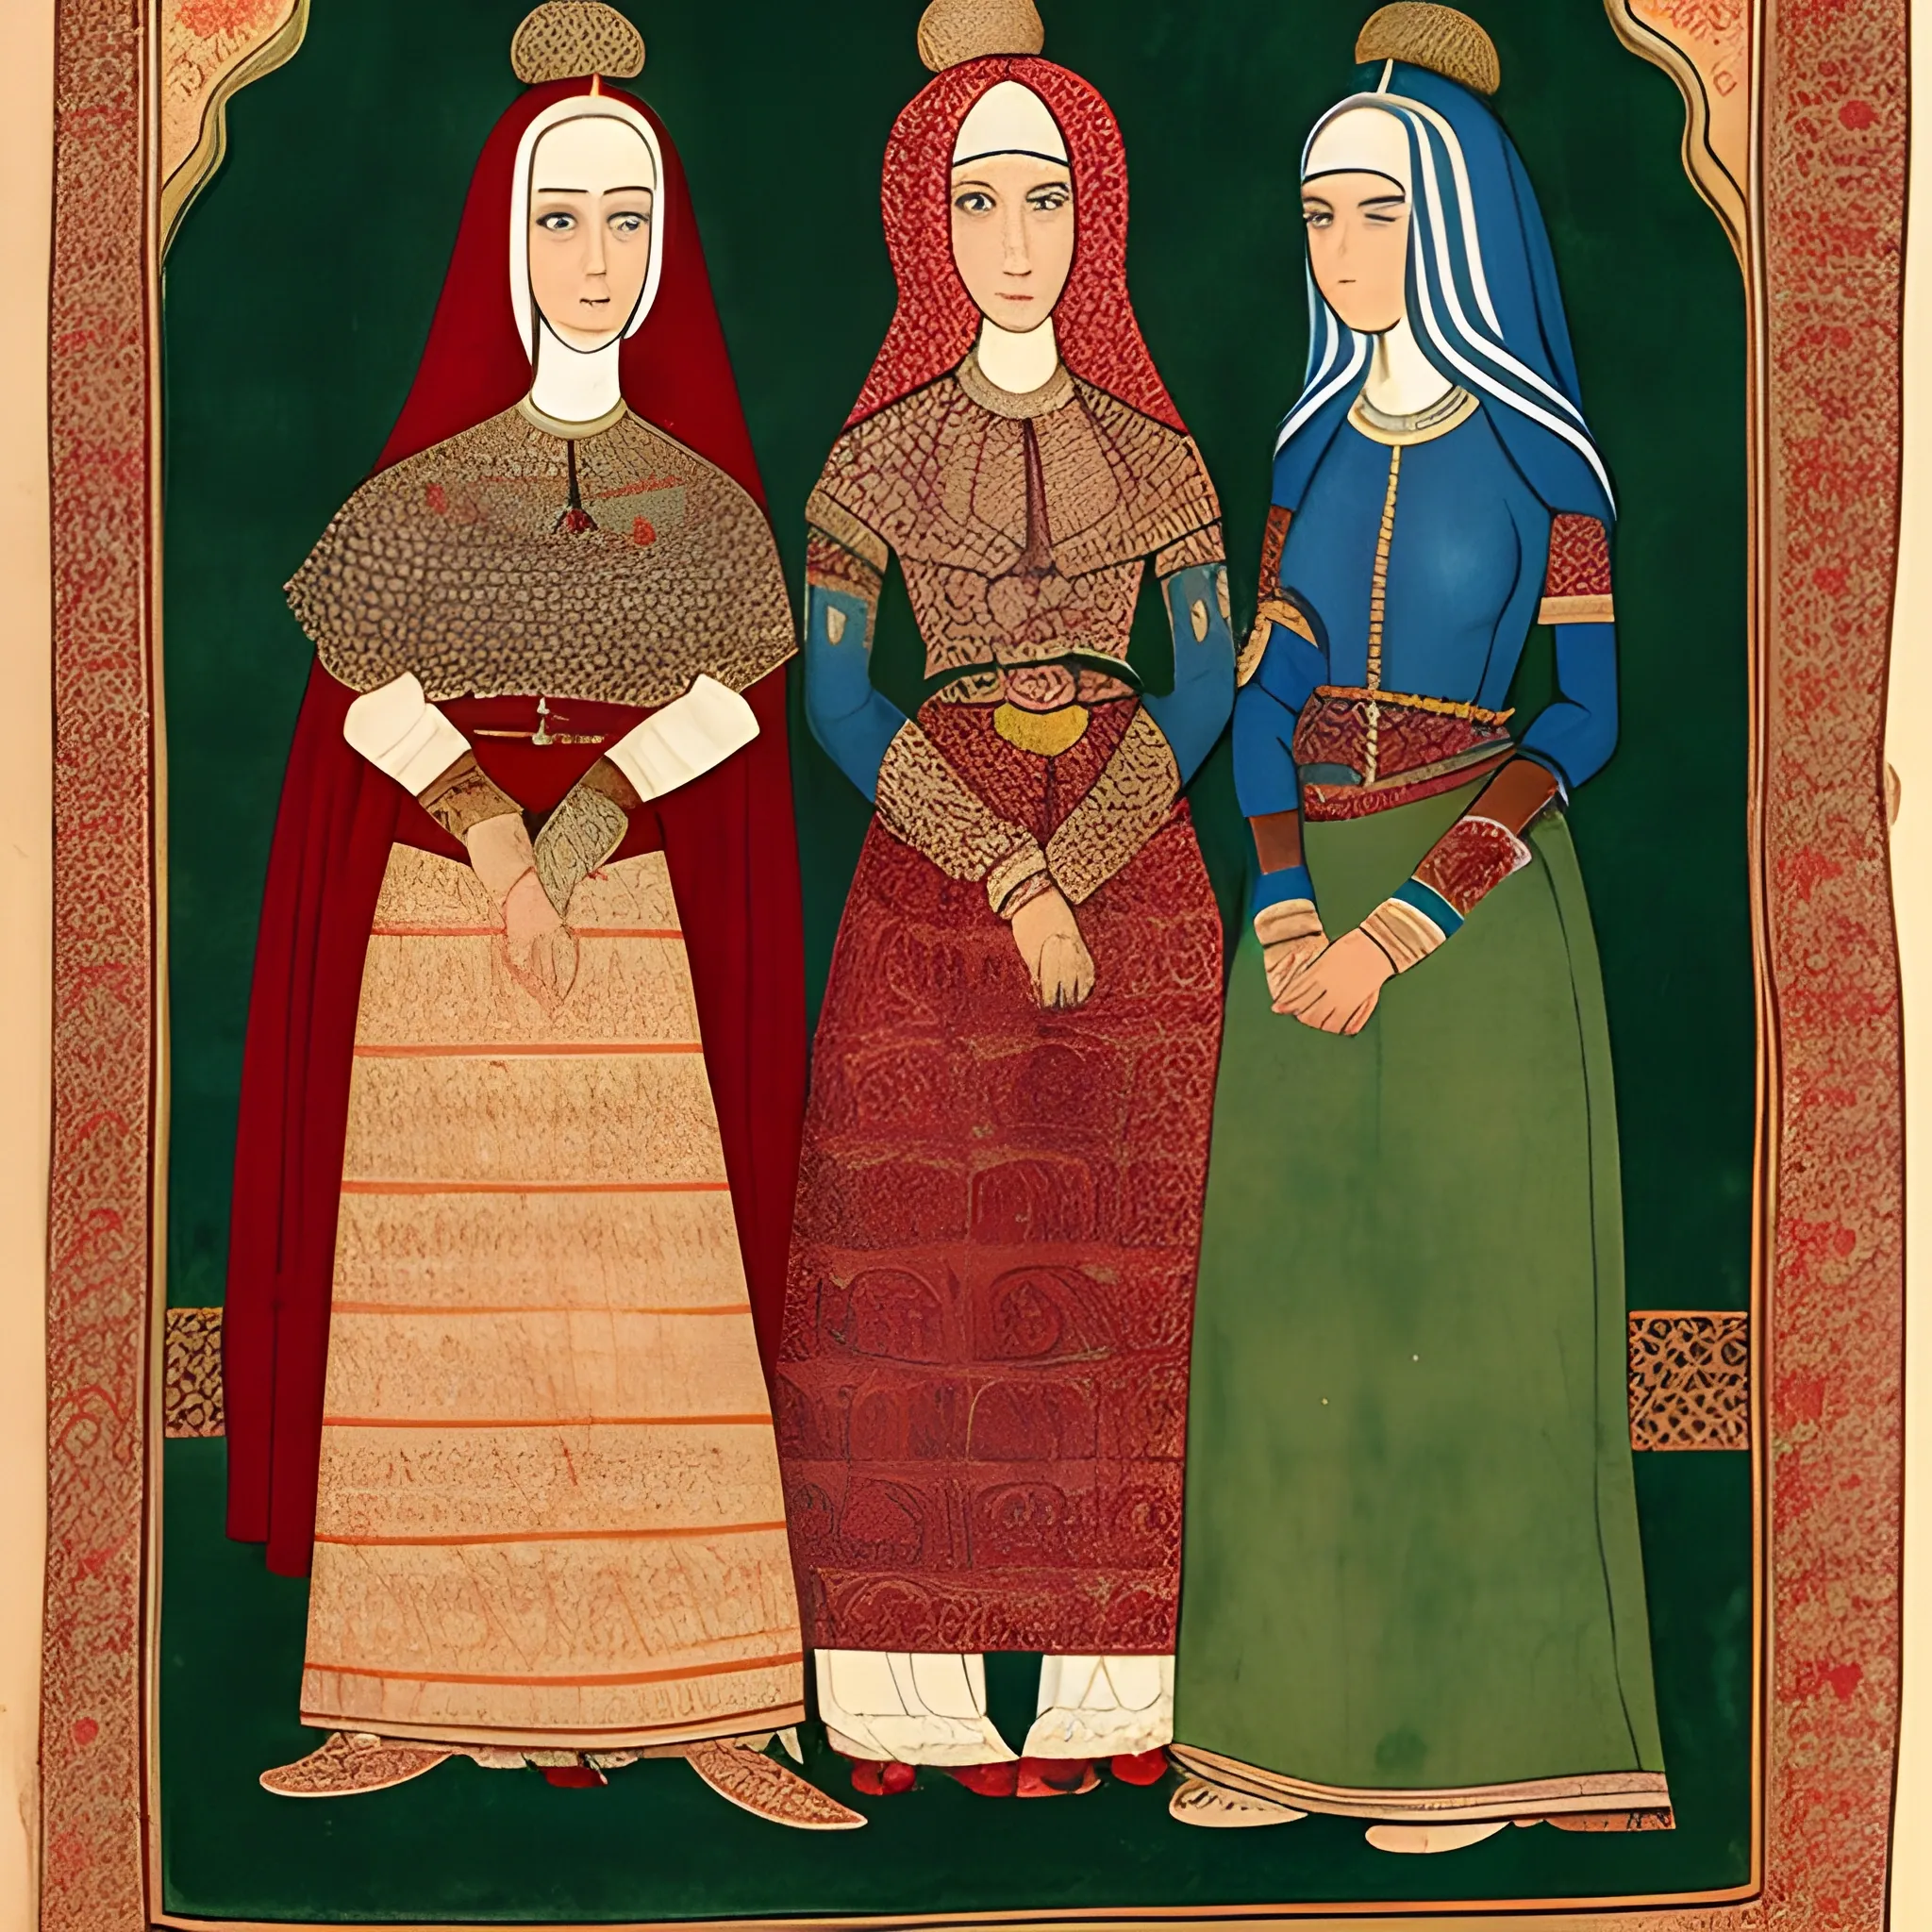 Women in the Safavid period of Iran